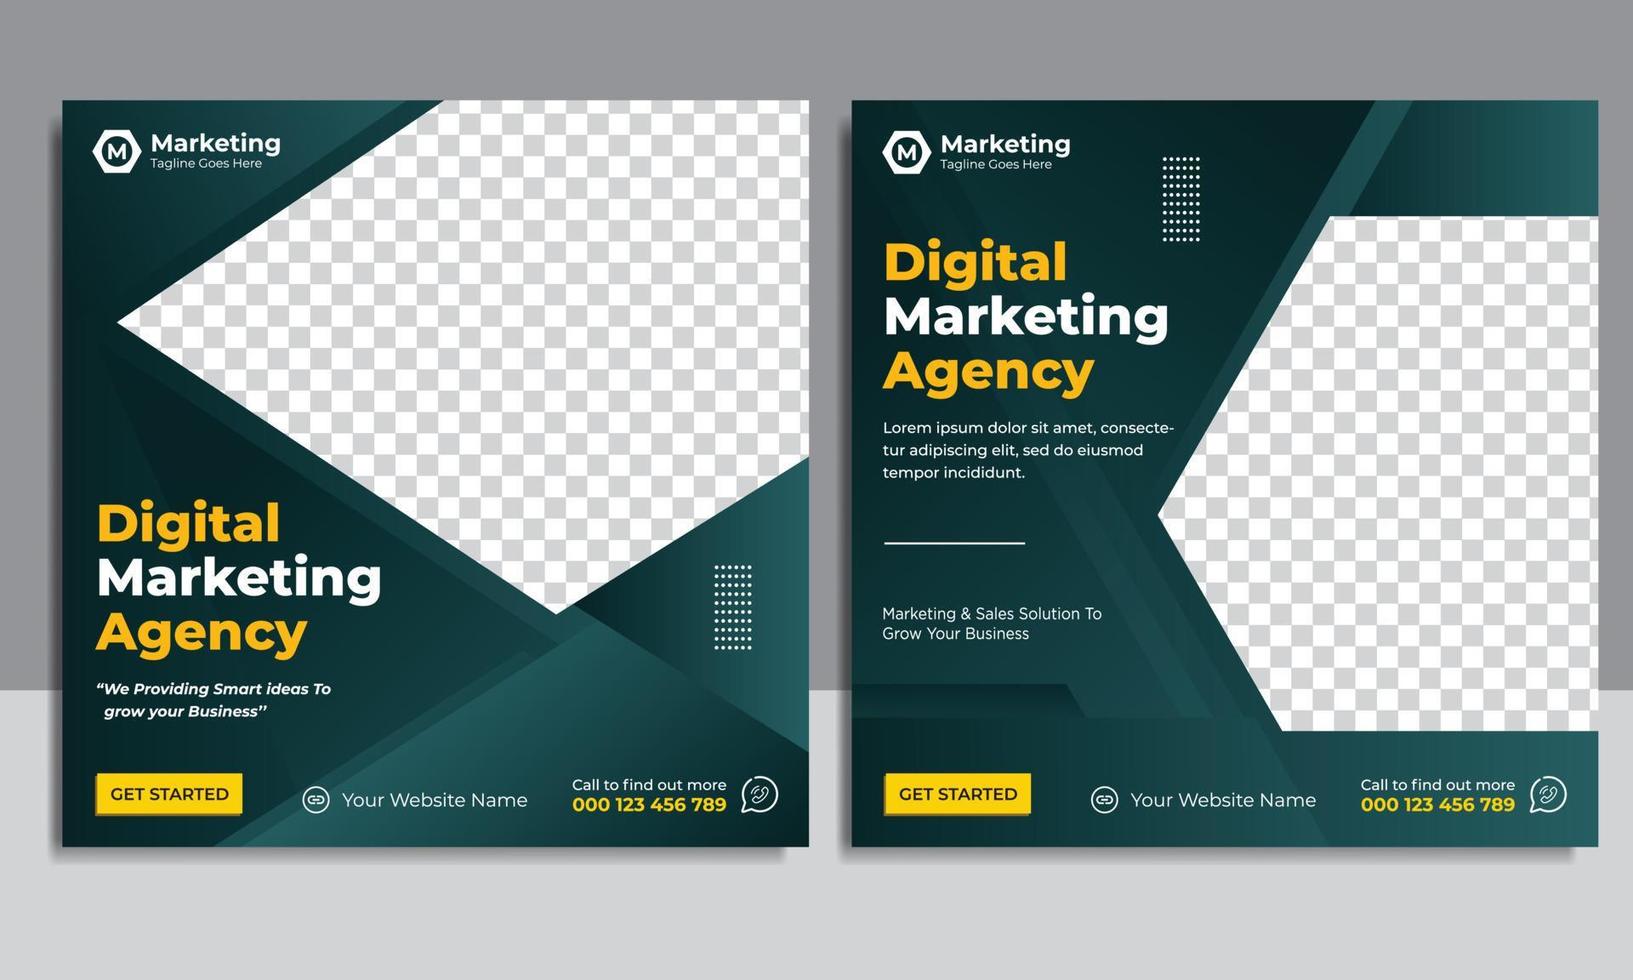 Digital marketing Agency social media post design template vector